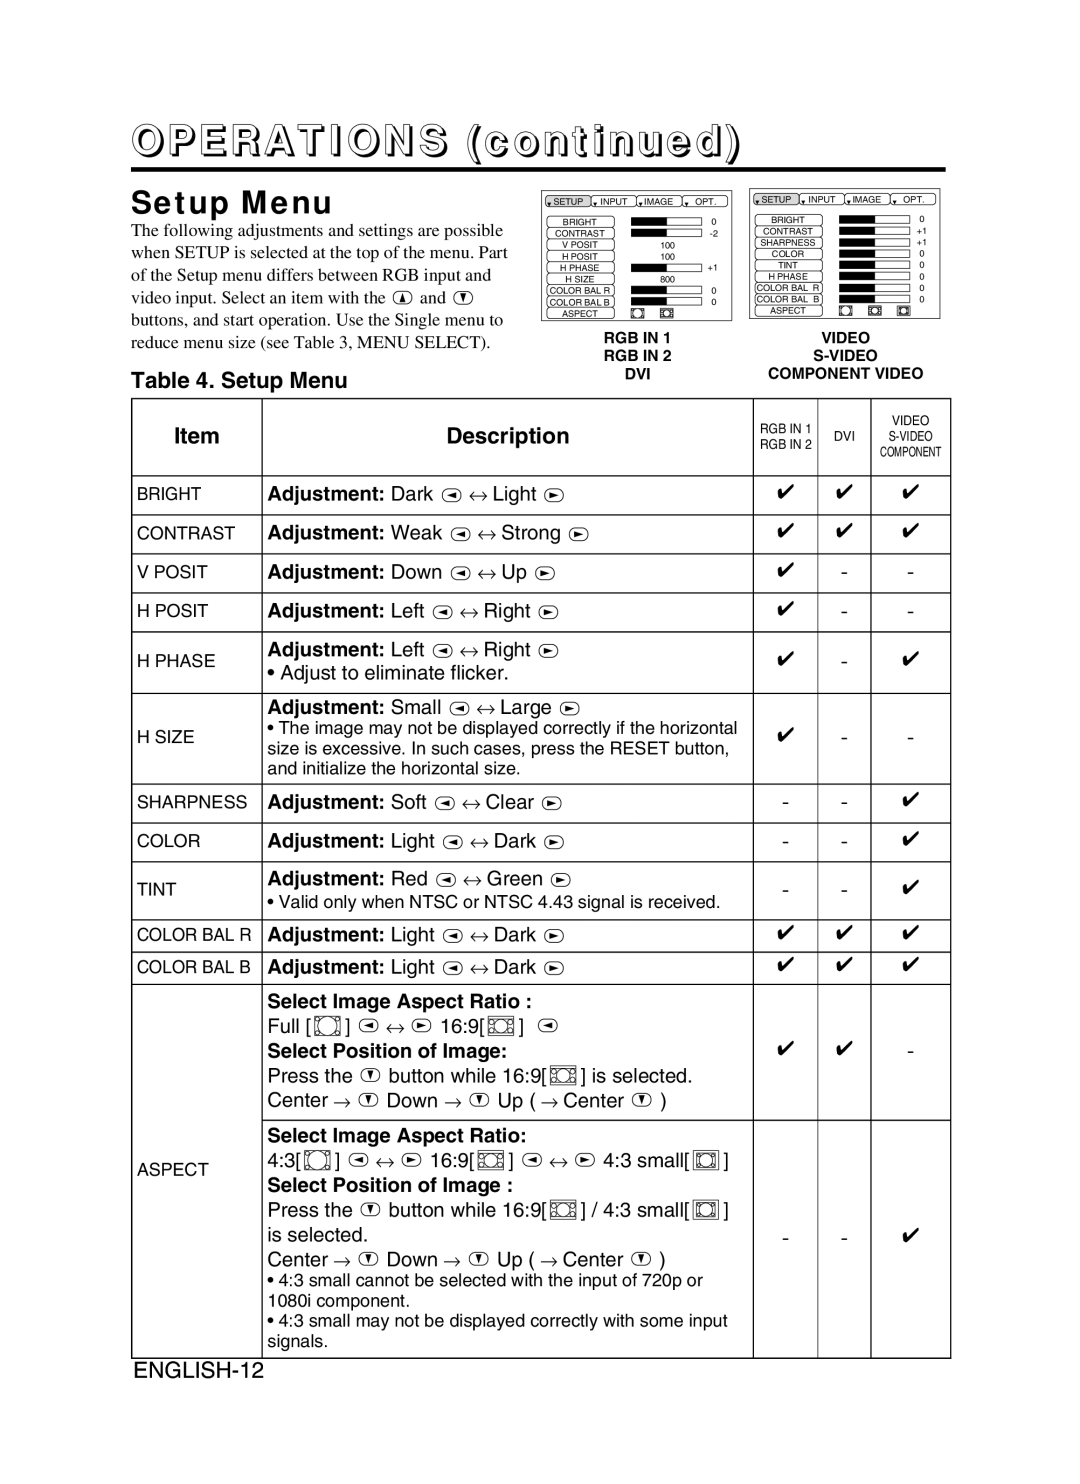 BOXLIGHT CP-775I user manual Setup Menu, ENGLISH-12, OPERATIONS continued, Description 